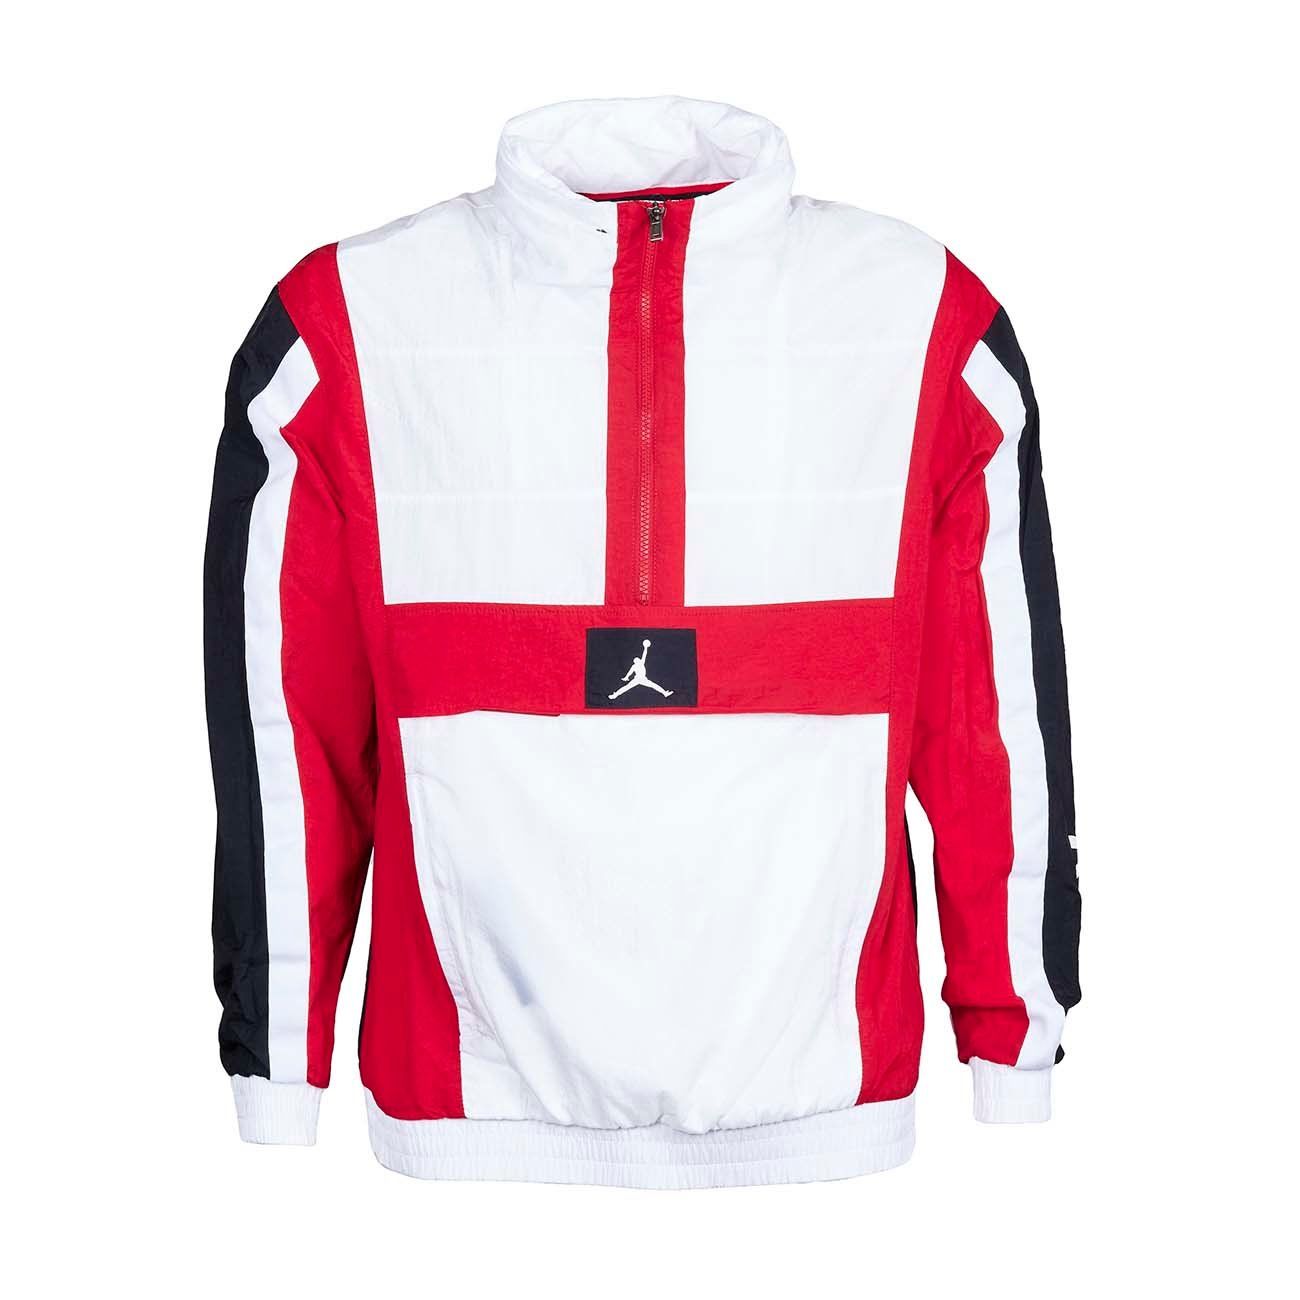 half red half white jacket